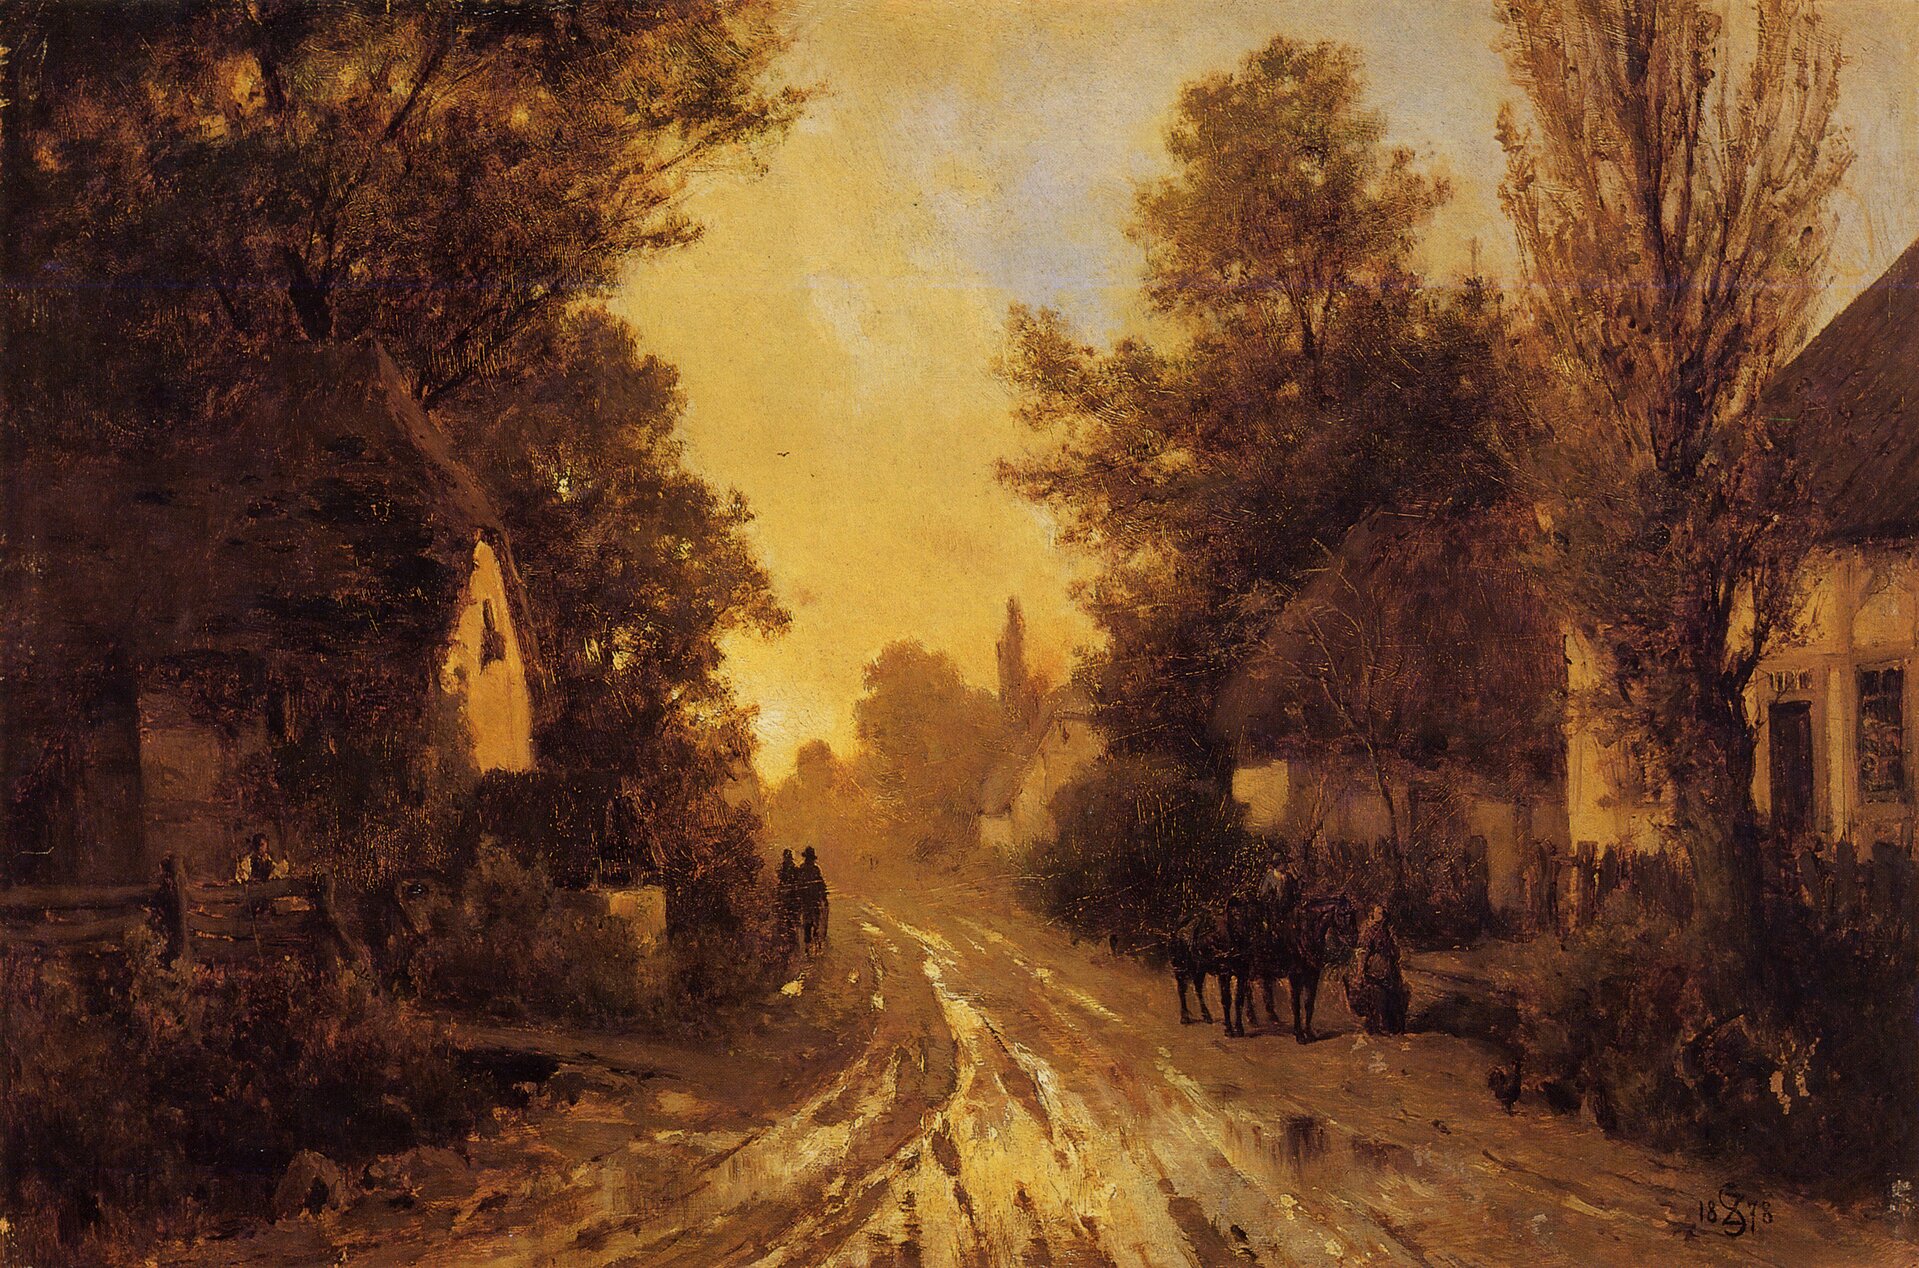 Wiejska droga jesienią Źródło: Zygmunt Sidorowicz, Wiejska droga jesienią, 1878, Lwowska Galeria Obrazów, domena publiczna.